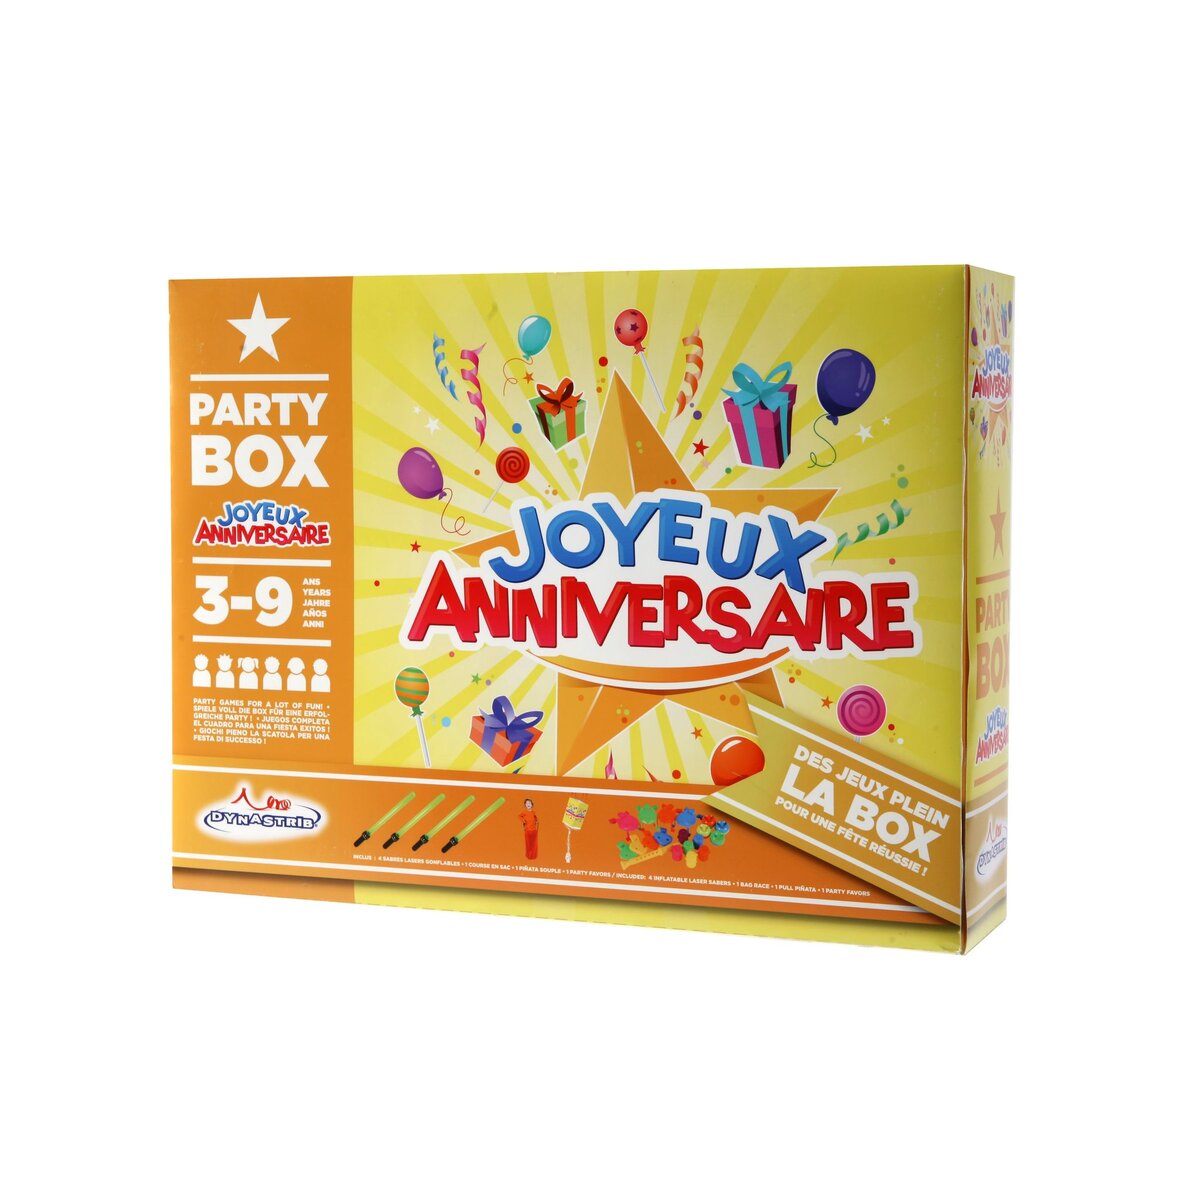 Party box anniversaire - Joyeux anniversaire